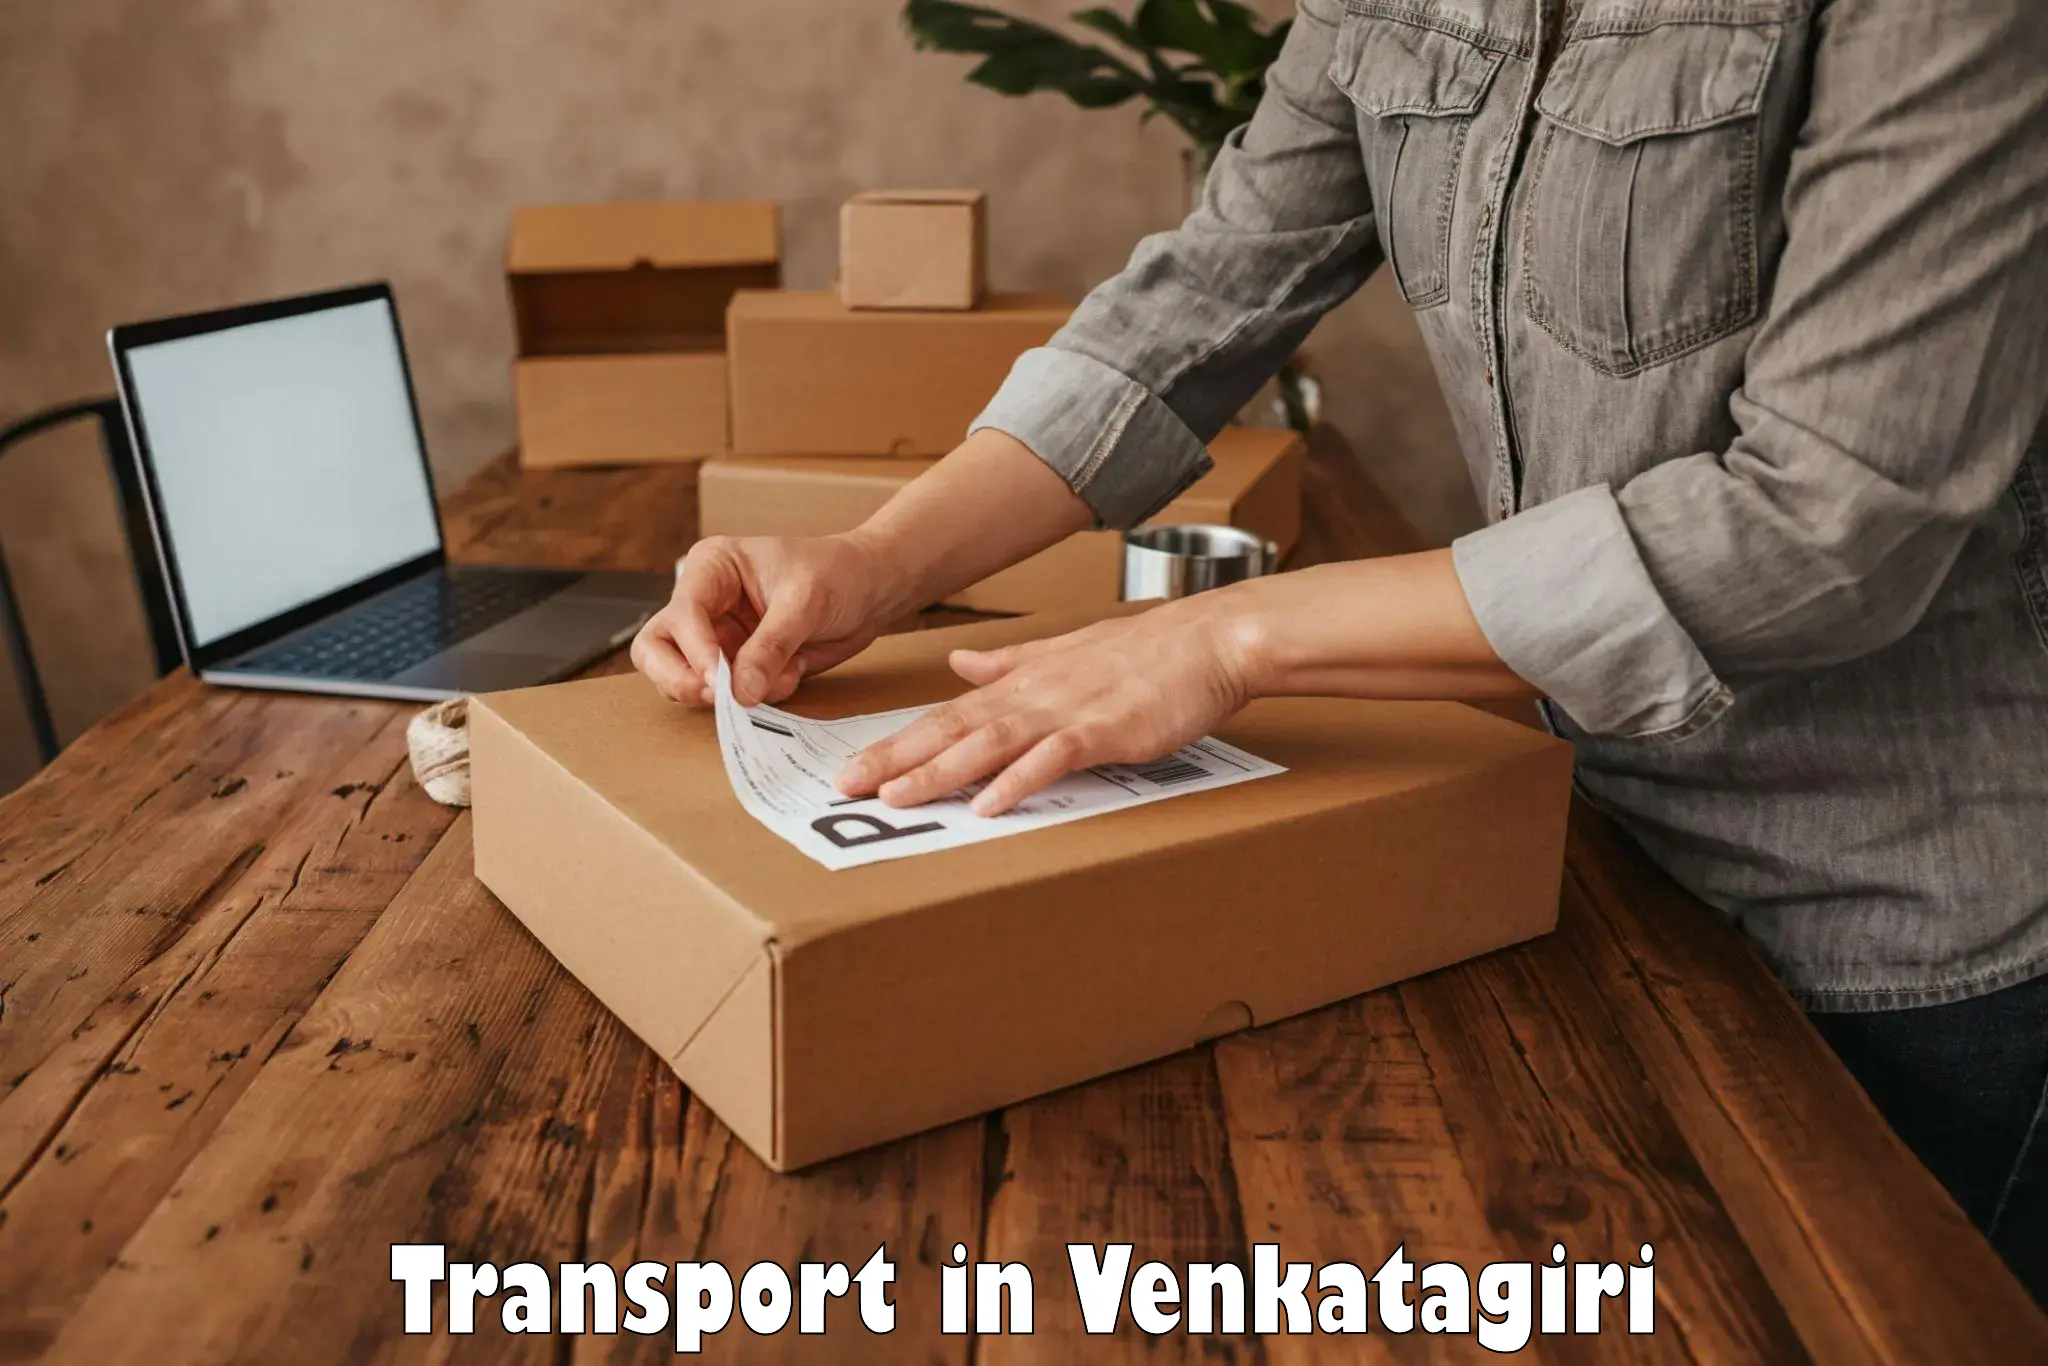 Transport in sharing in Venkatagiri